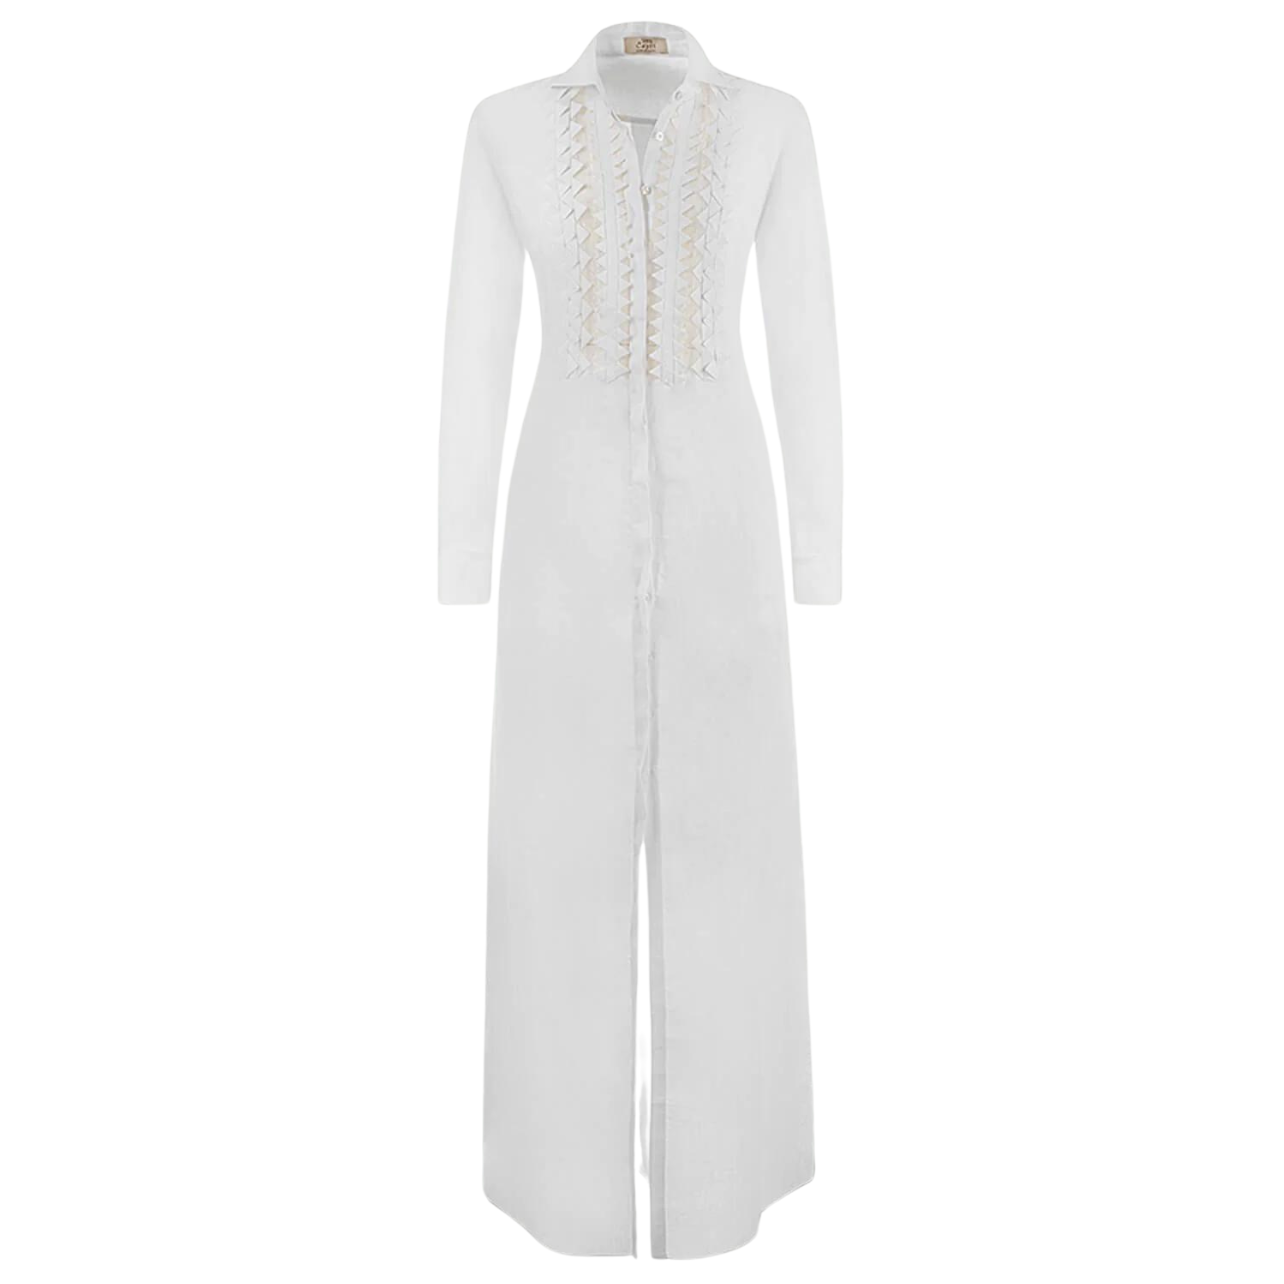 100% Capri white linen maxi dress